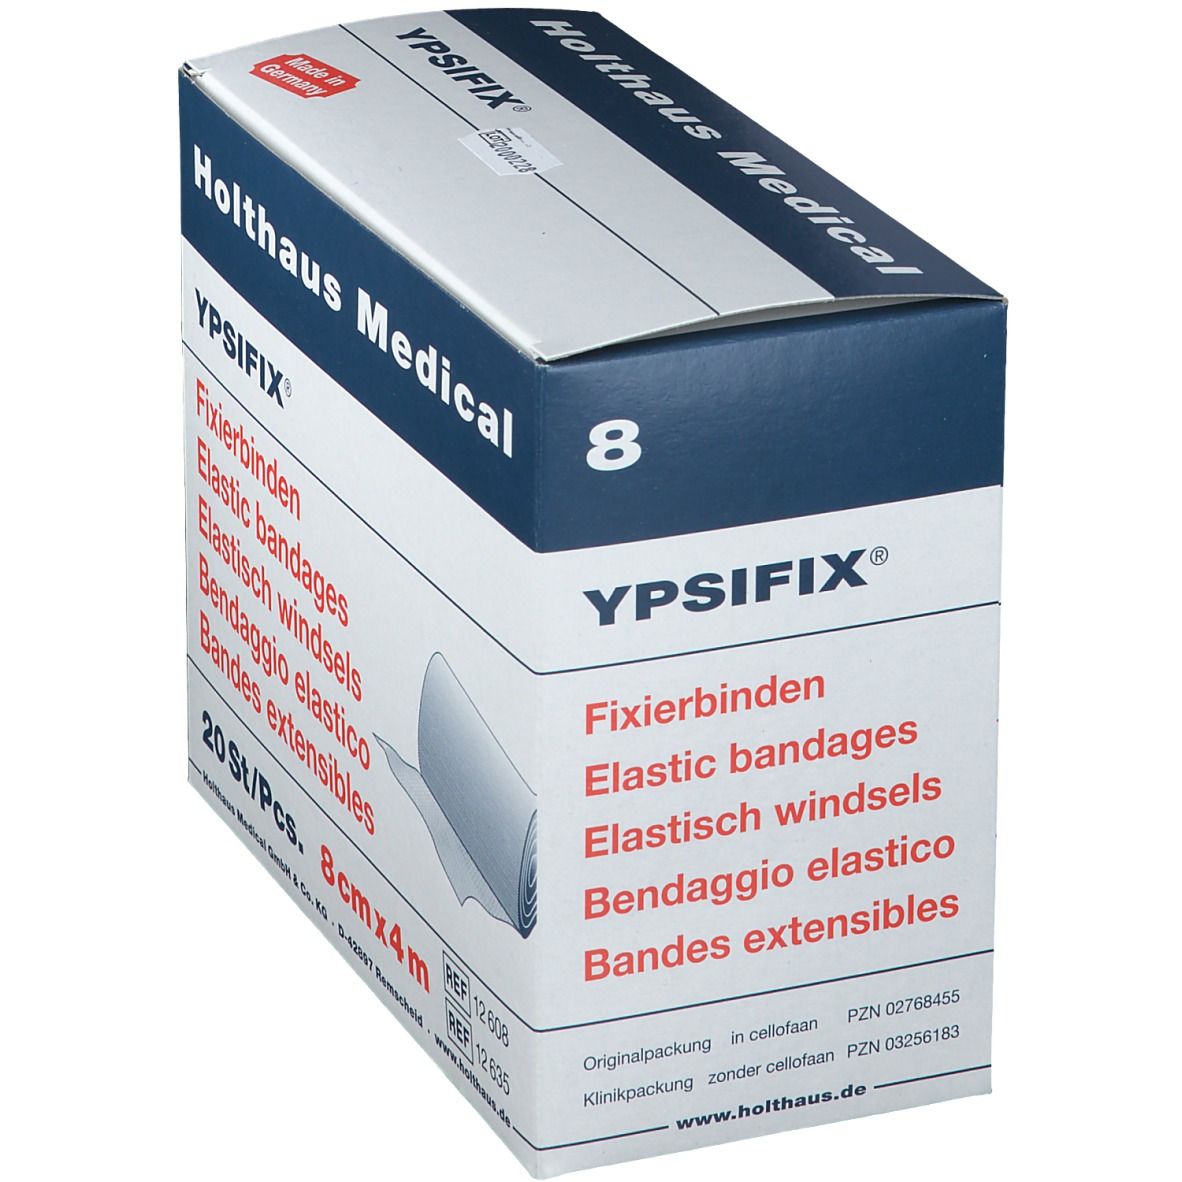 YPSIFIX® Fixierbinden elastisch 8 cm x 4 m lose